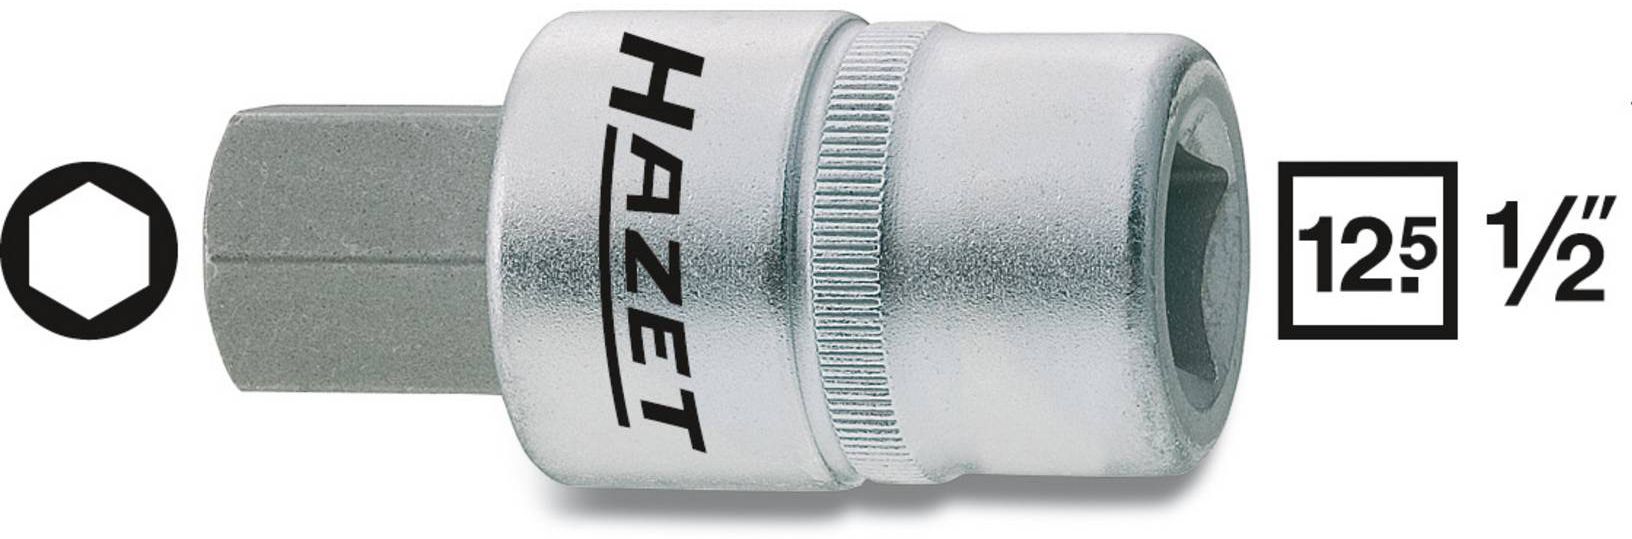 HAZET Schraubendreher-Einsatz, Inbus 986-7mm, 1/2", L: 60mm, D: 23mm - Steck- und Drehmomentschlüssel